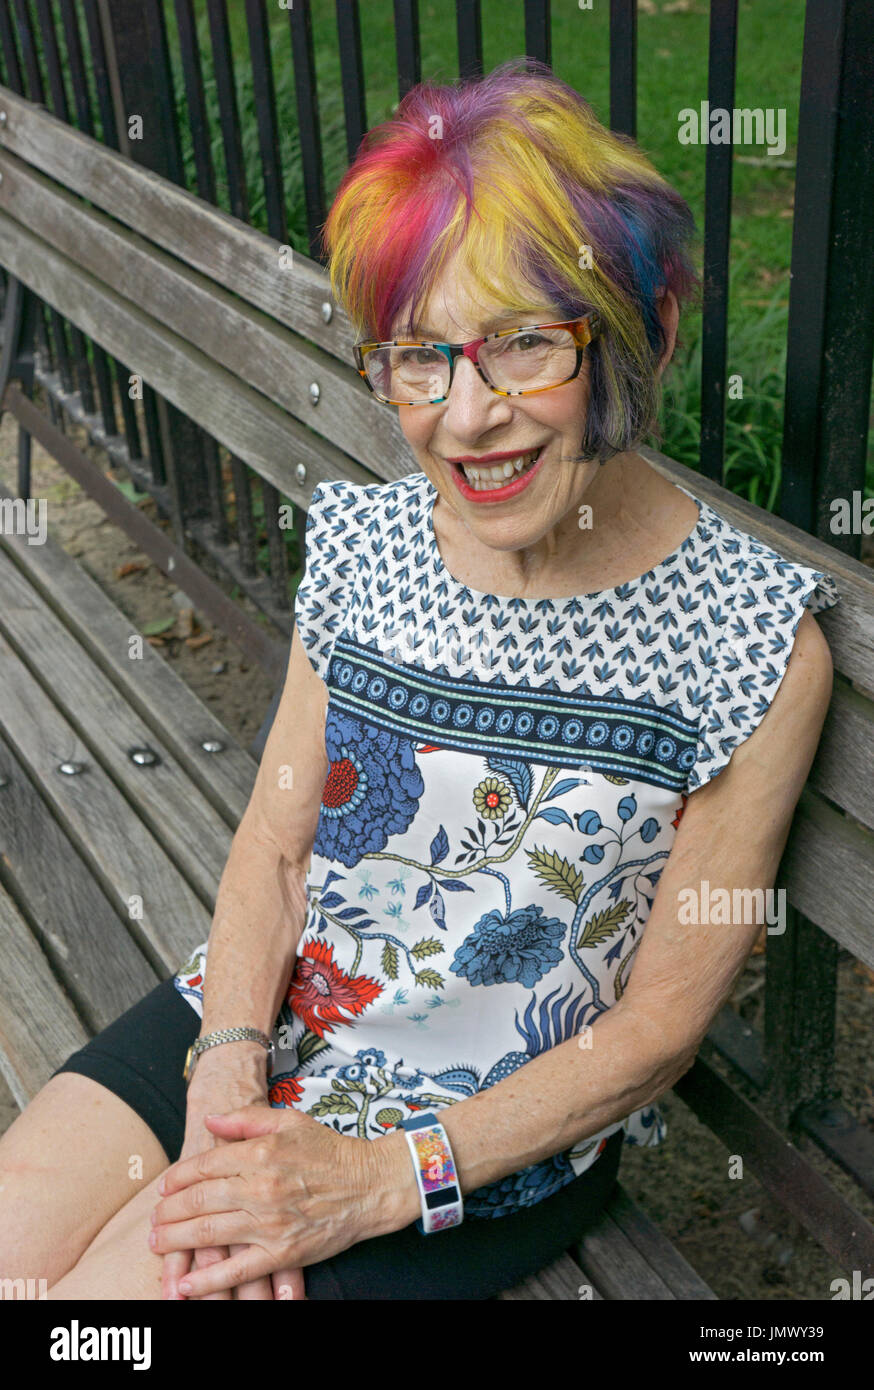 Porträt von einer attraktiven jungen Frau in ihrer Mitte der siebziger Jahre mit einer modernen bunten Frisur. In Greenwich Village, New York City. Stockfoto